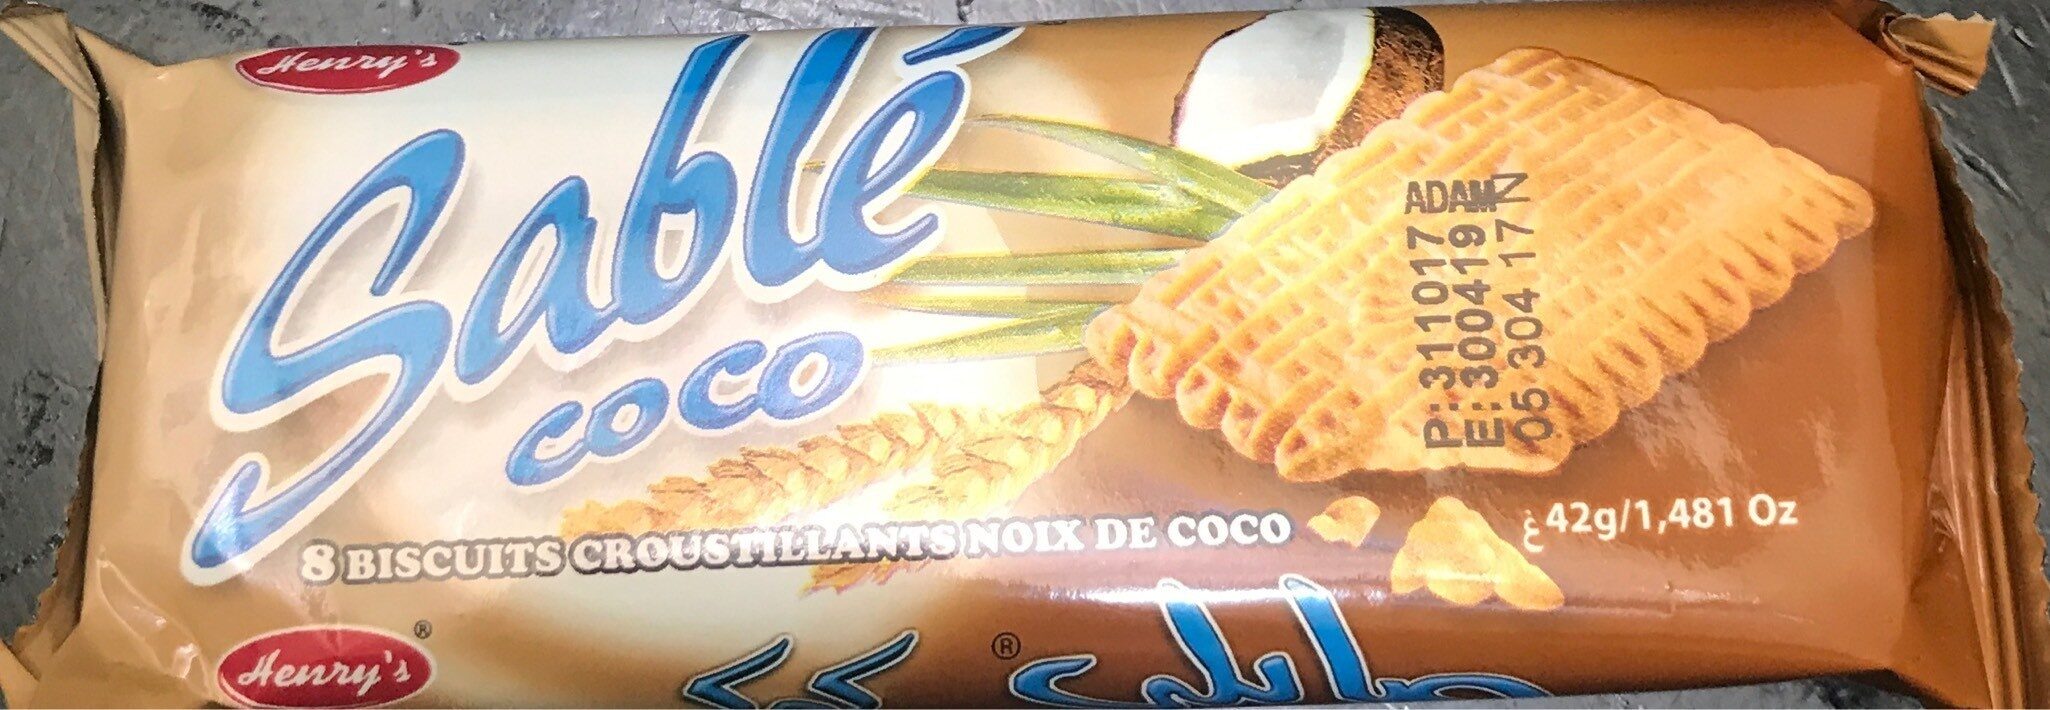 Sable coco - Produit